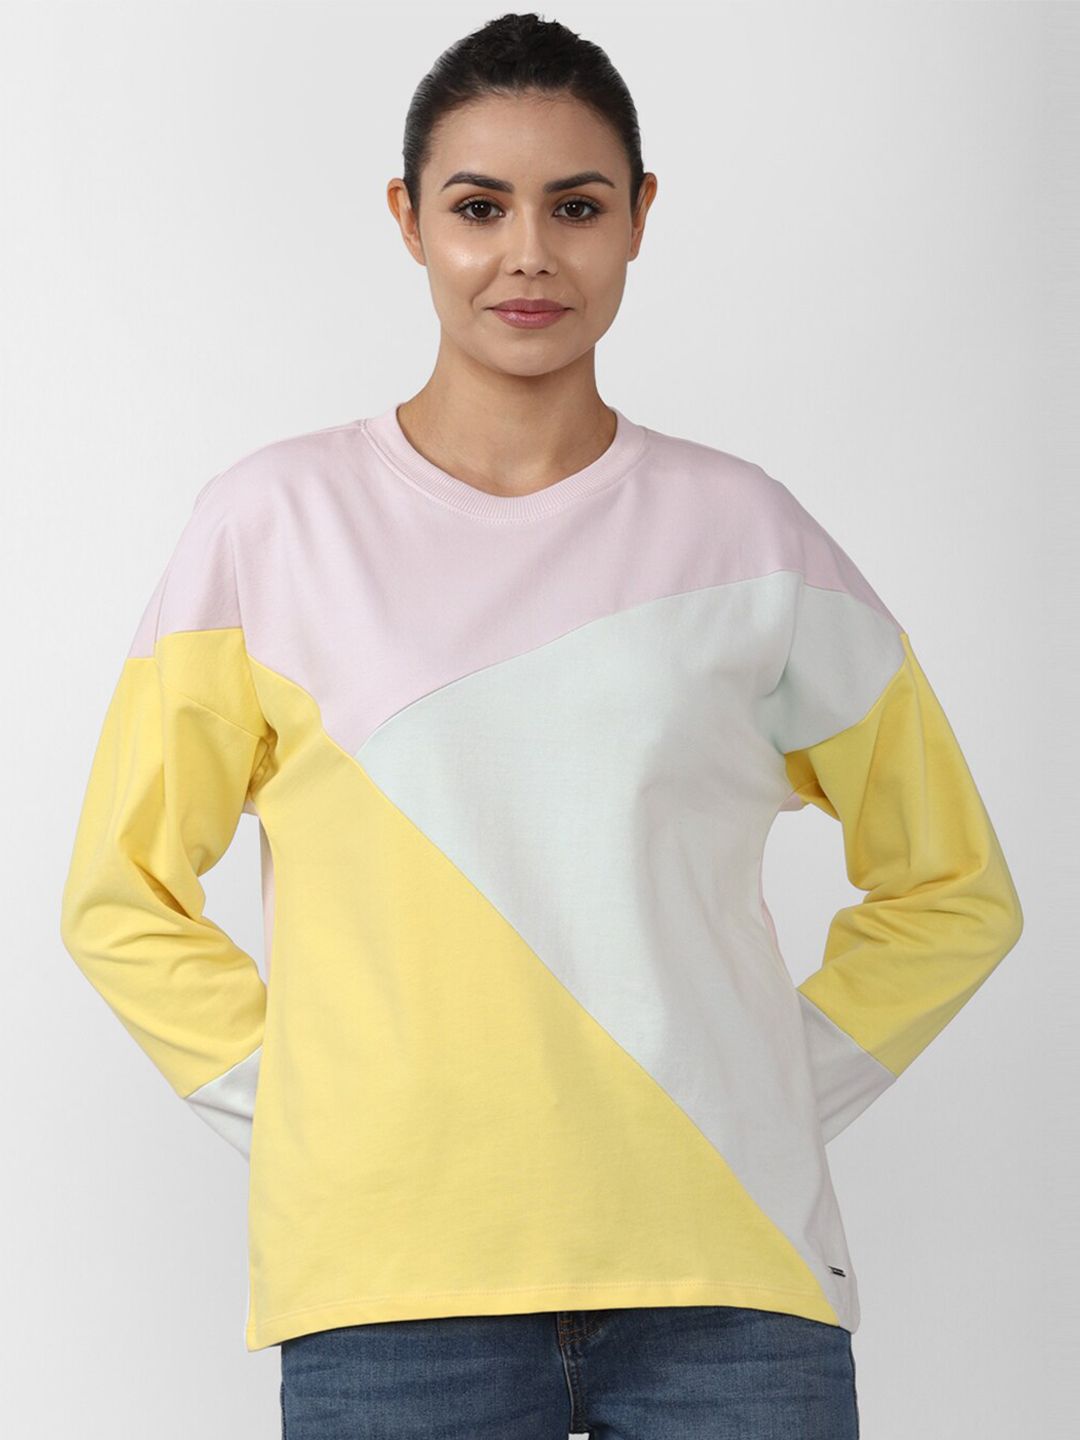 Van Heusen Women Colourblocked Sweatshirt Price in India